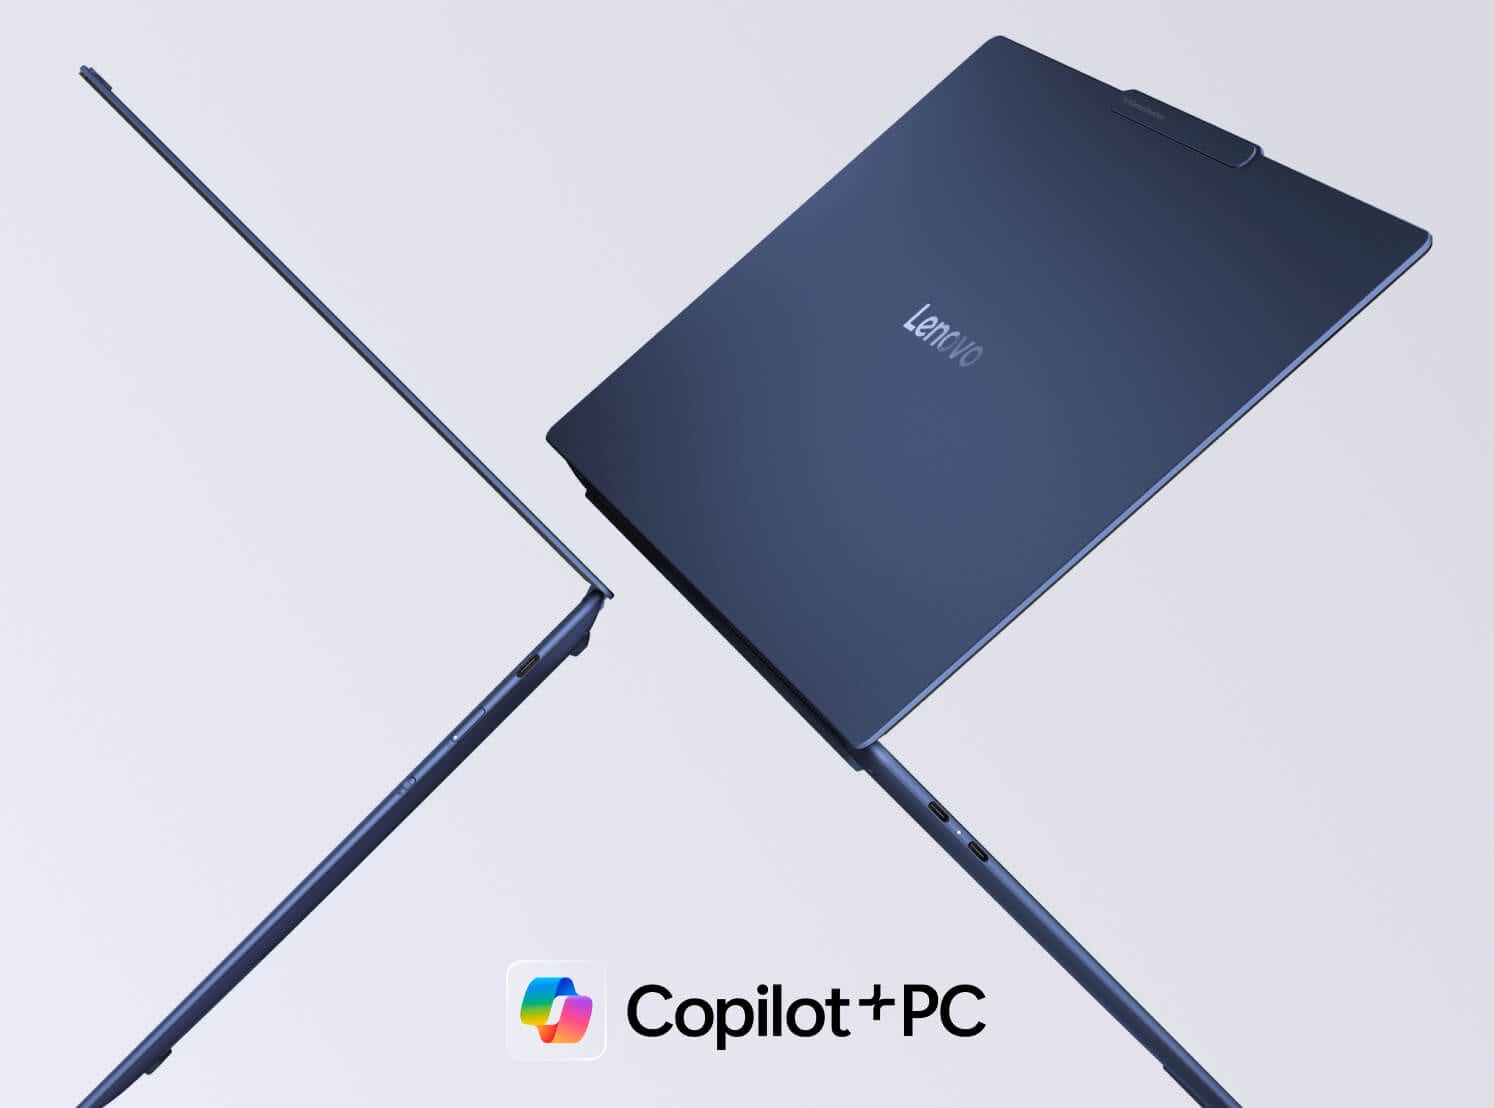 Deux ordinateurs portables Lenovo Yoga flottant en l’air dos à dos, avec le logo Copilot+PC